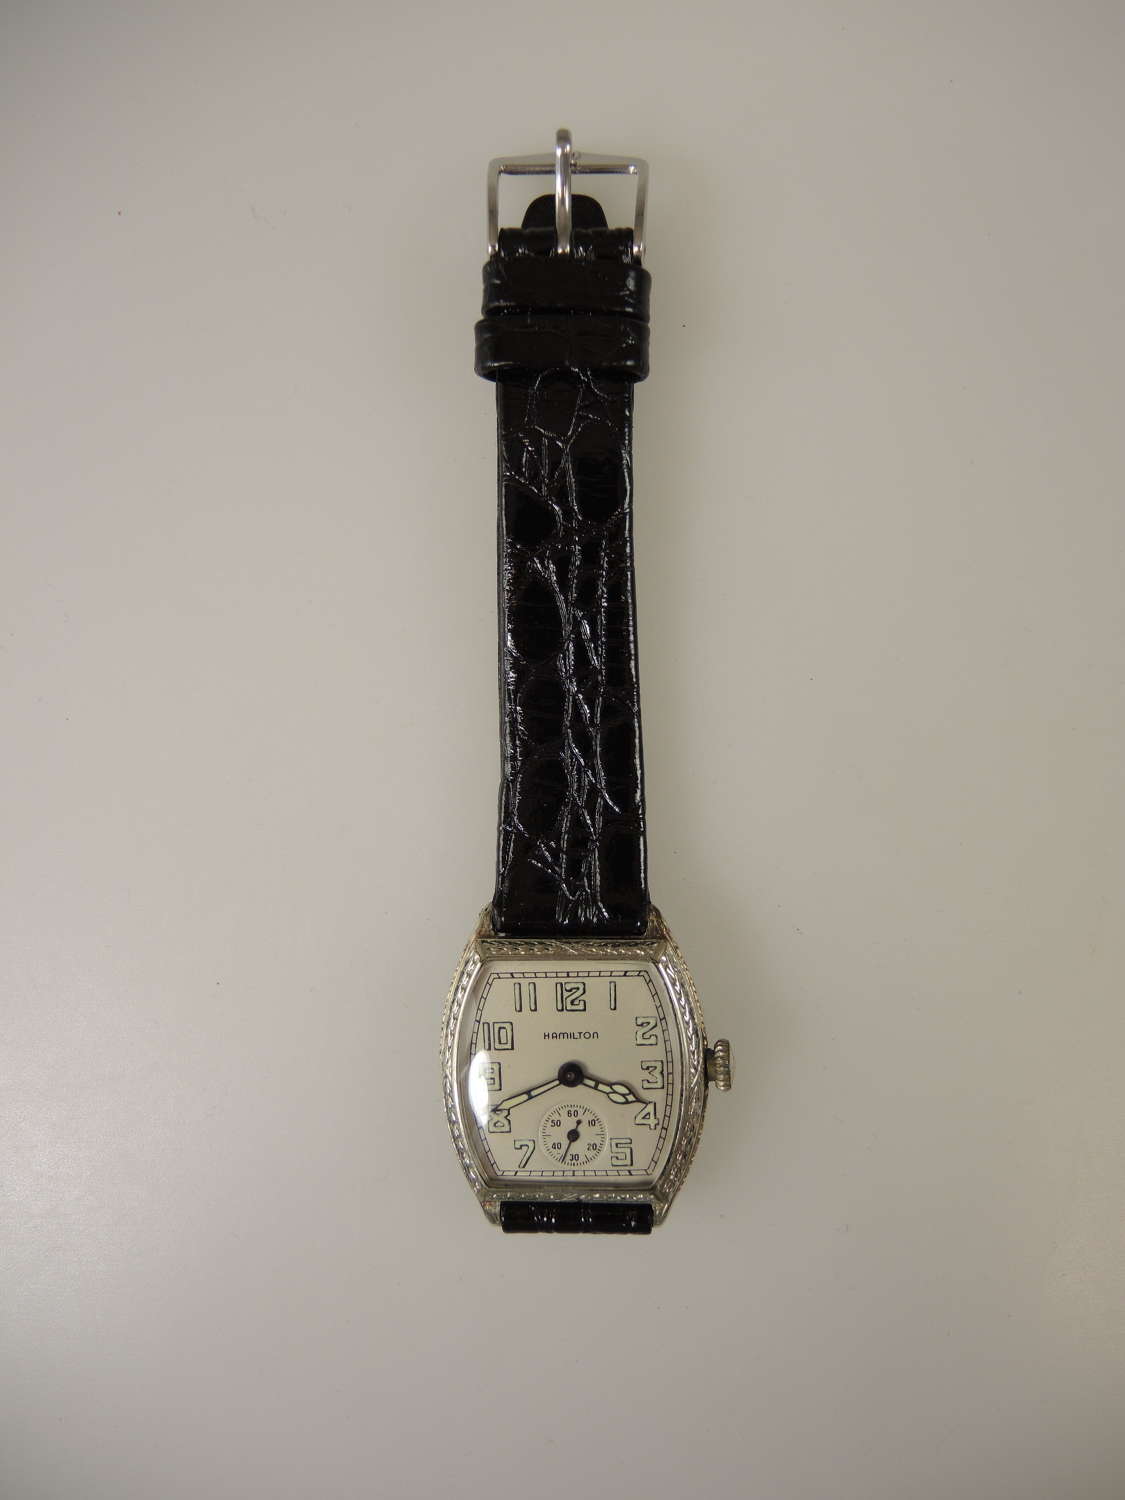 Stylish 17 Jewel Hamilton Wrist Watch c1927